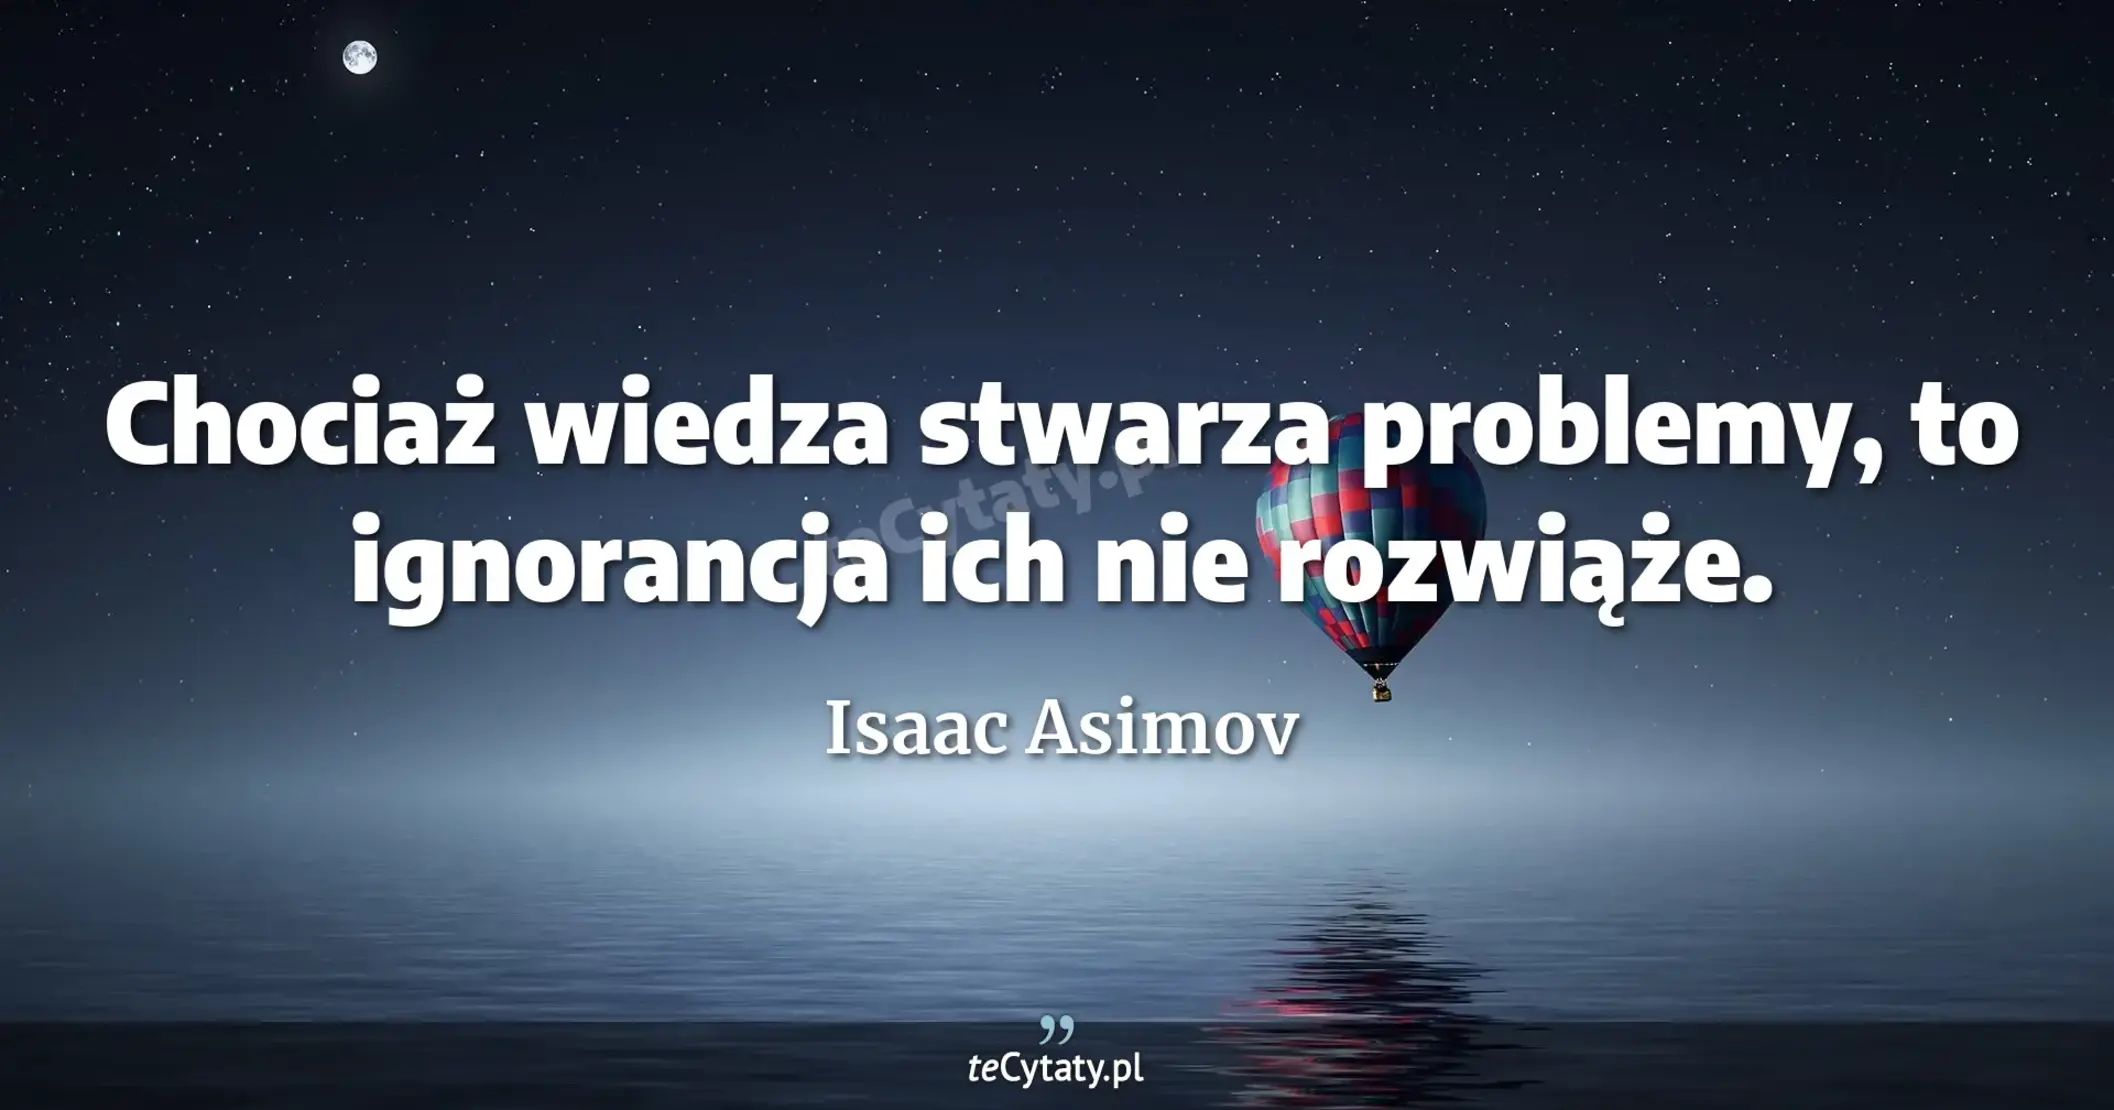 Chociaż wiedza stwarza problemy, to ignorancja ich nie rozwiąże. - Isaac Asimov